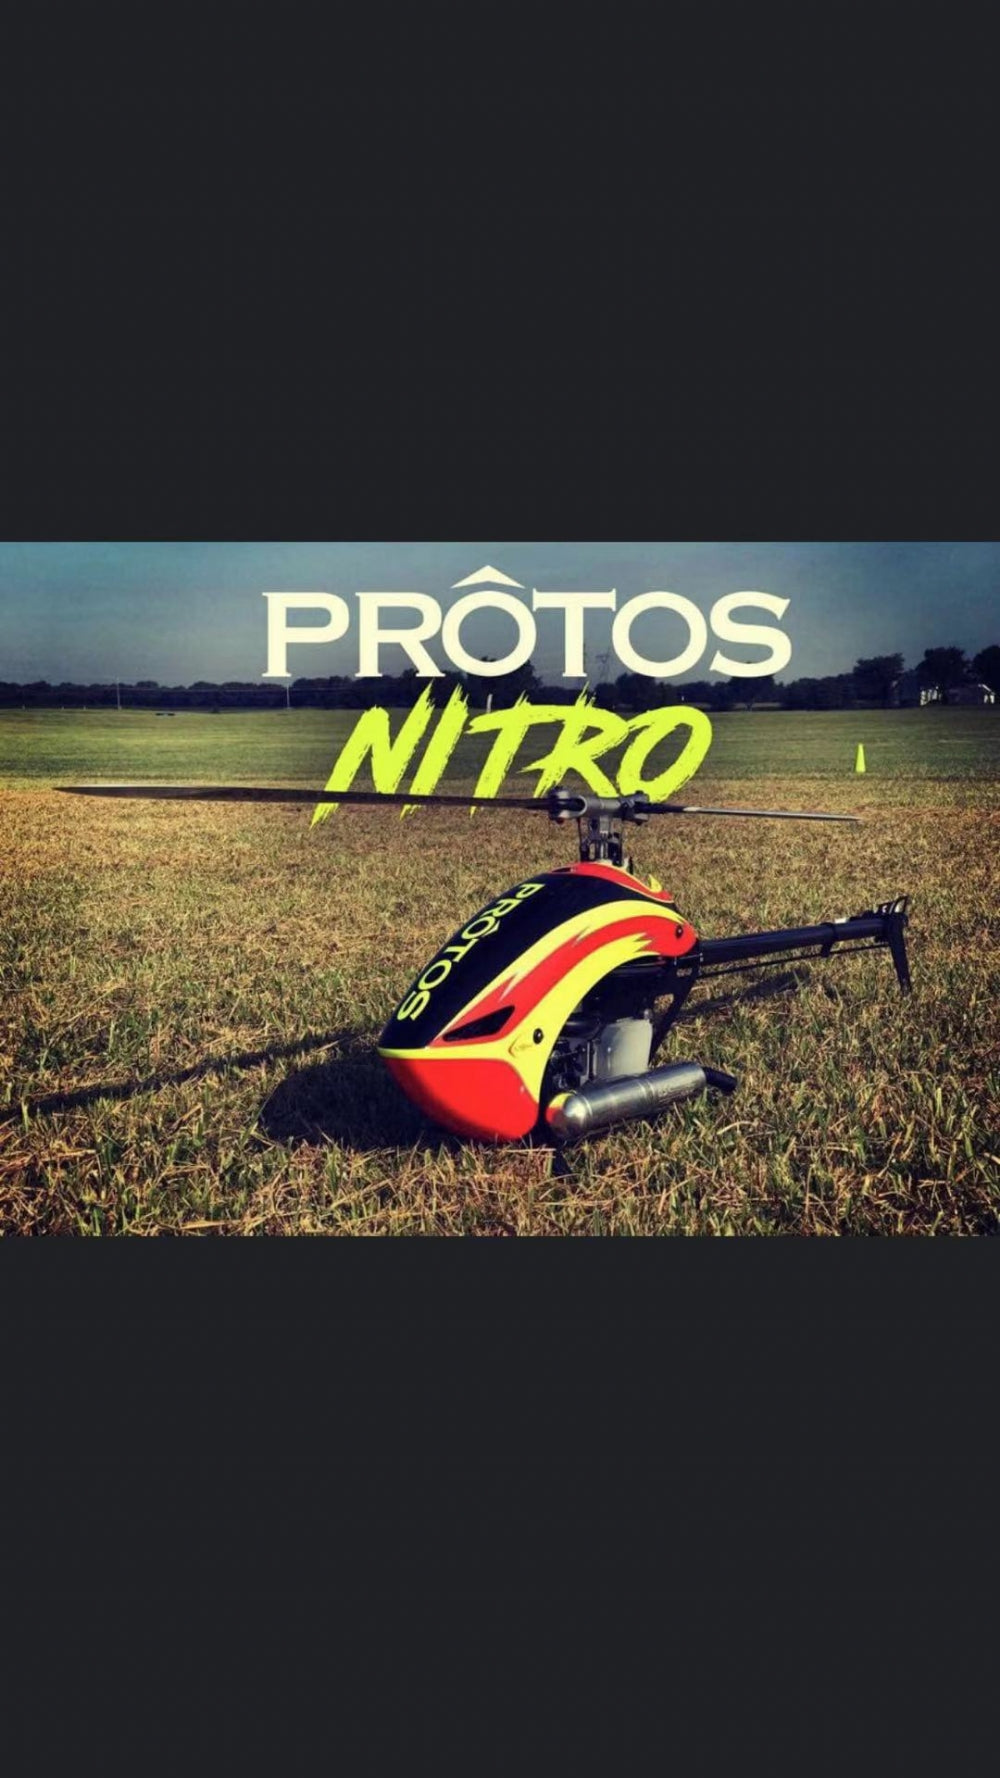 XL70NK01 Protos 700 Nitro